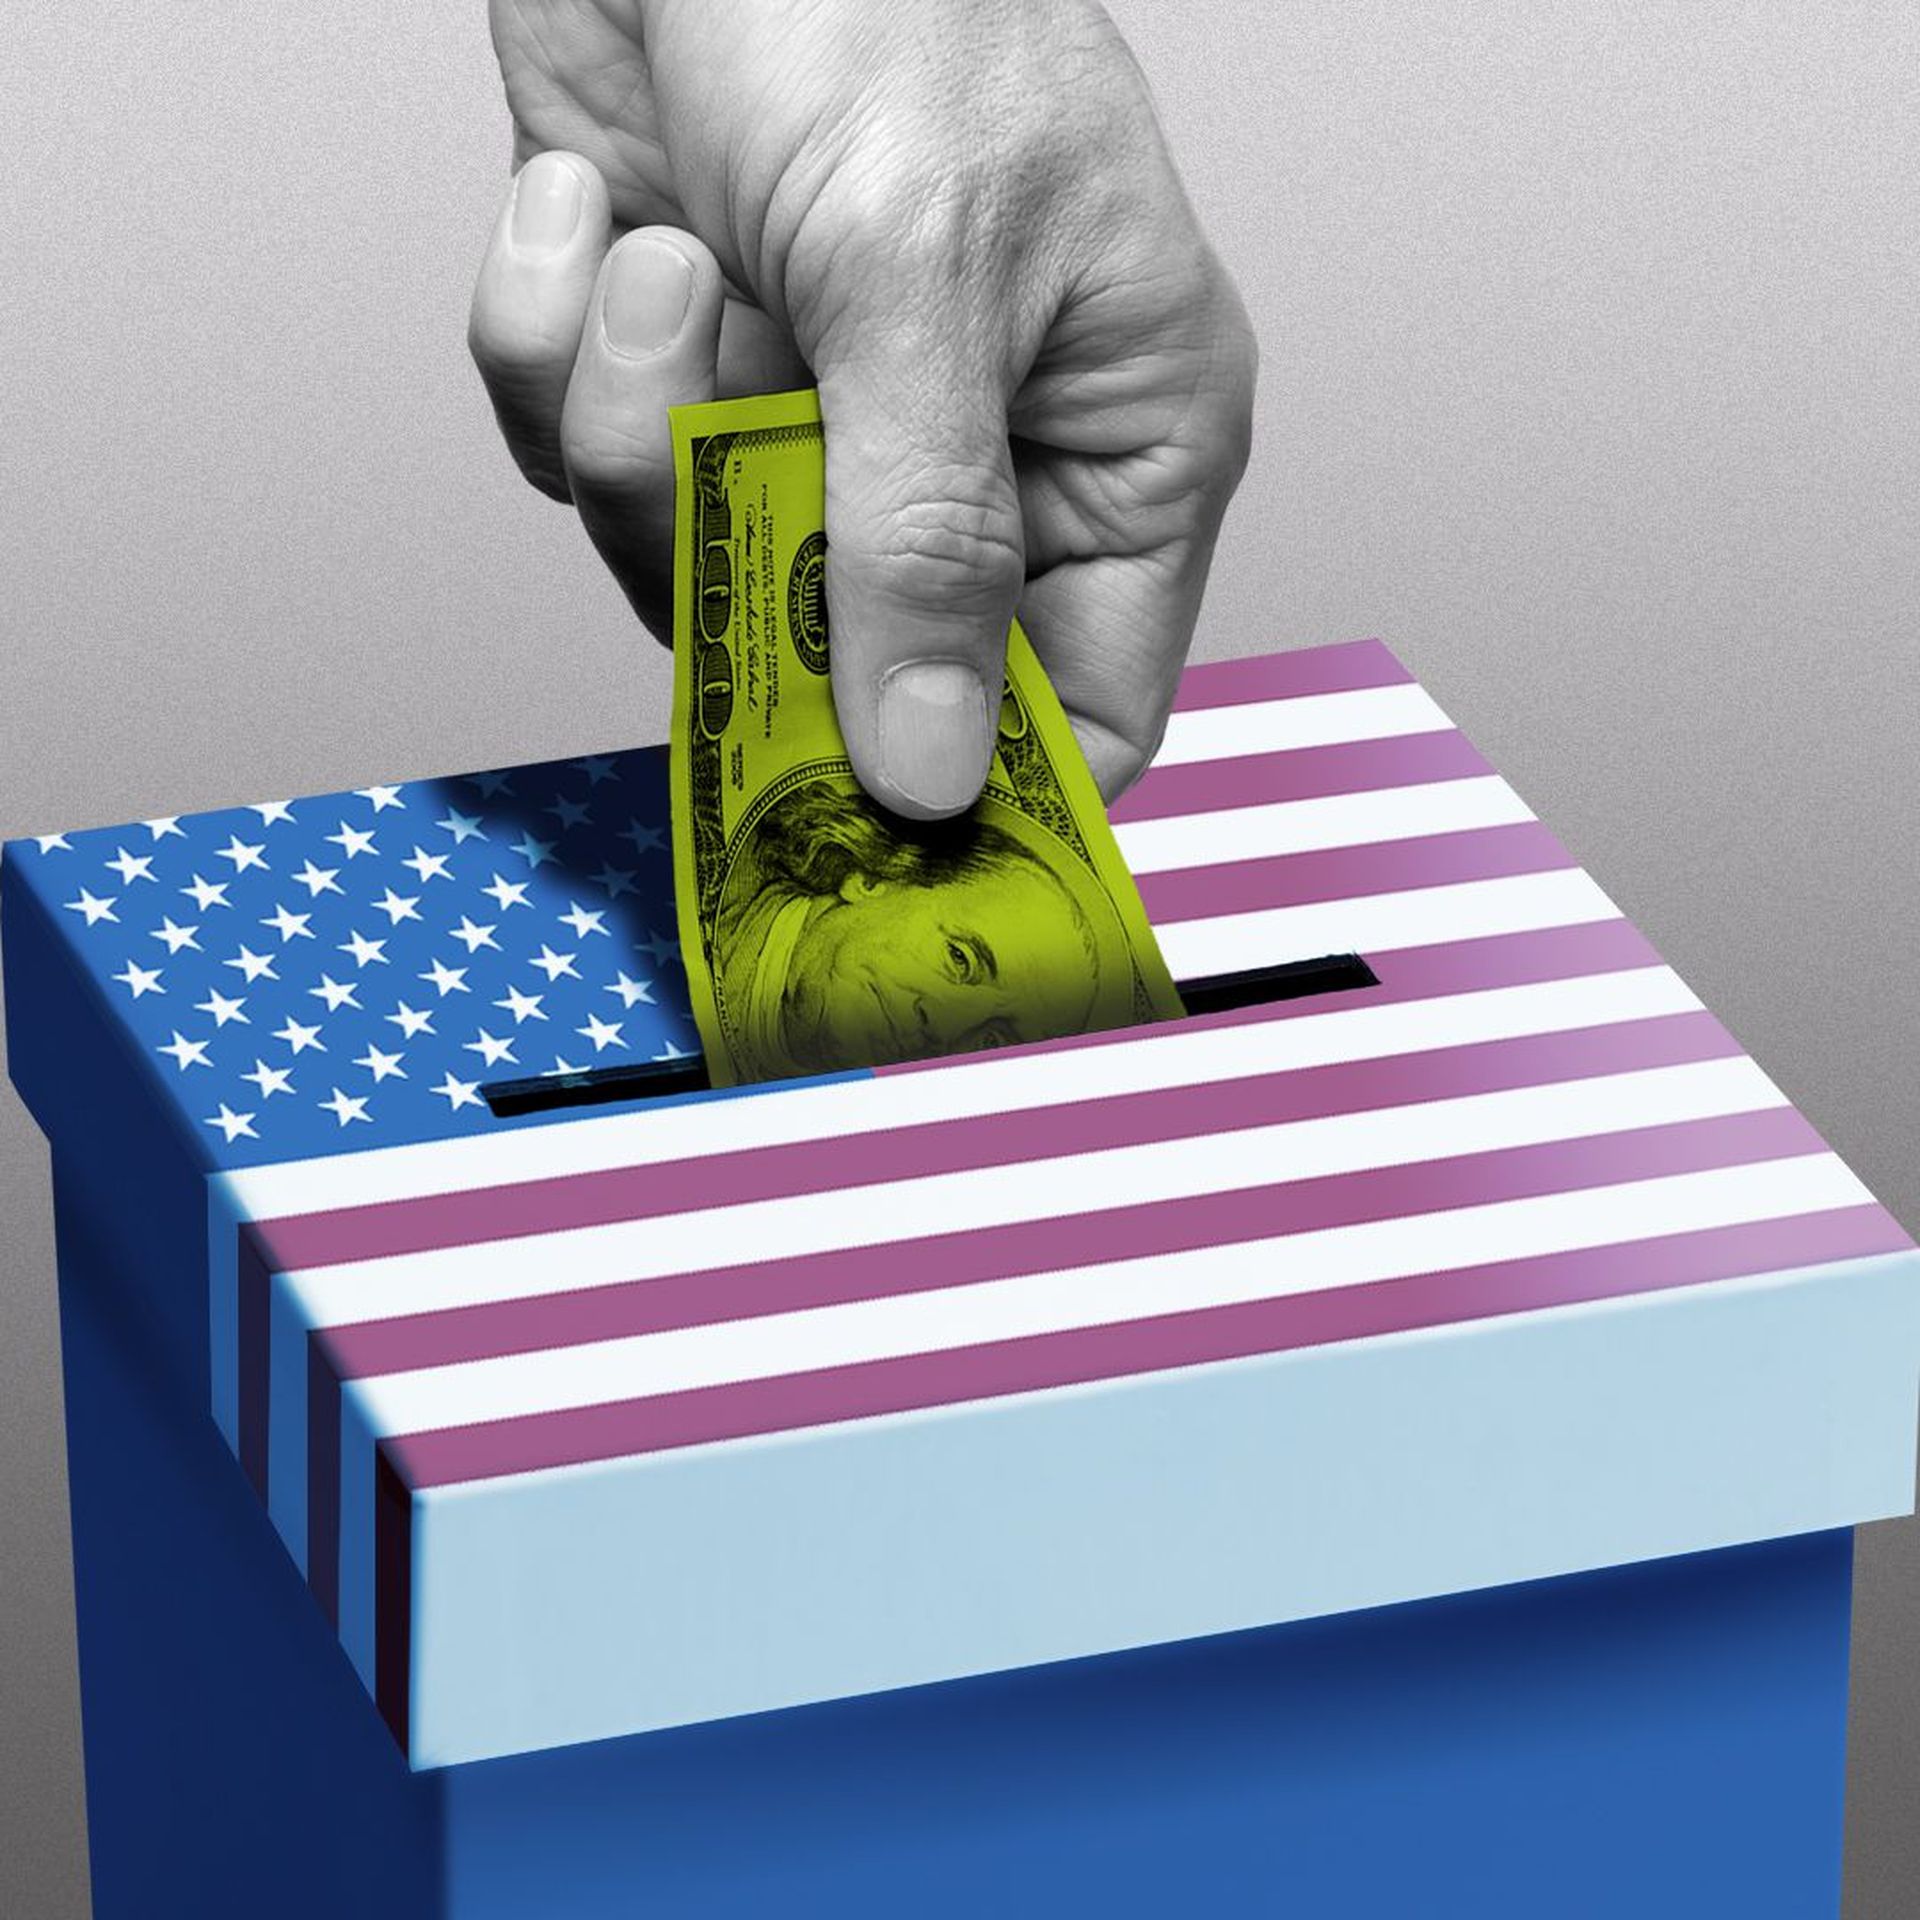 A hand puts money into a ballot box